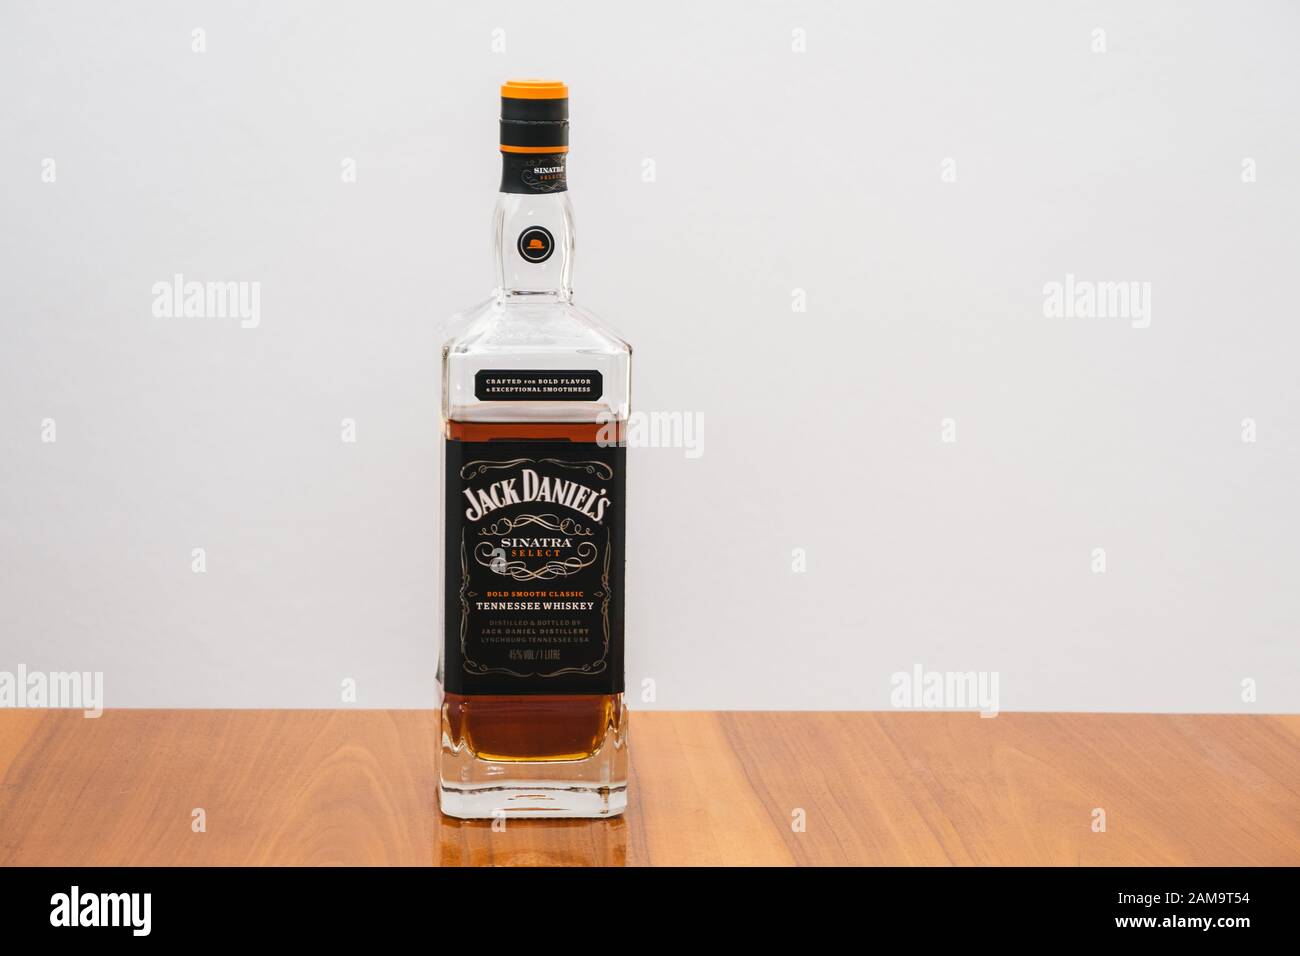 Lynchburg, Tennessee, USA - 11. Januar 2020: Jack Daniels Sinatra Select Tennessee Whiskey in einer Flasche auf einem eleganten Holztisch. Ein luxuriöses Getränk. Stockfoto